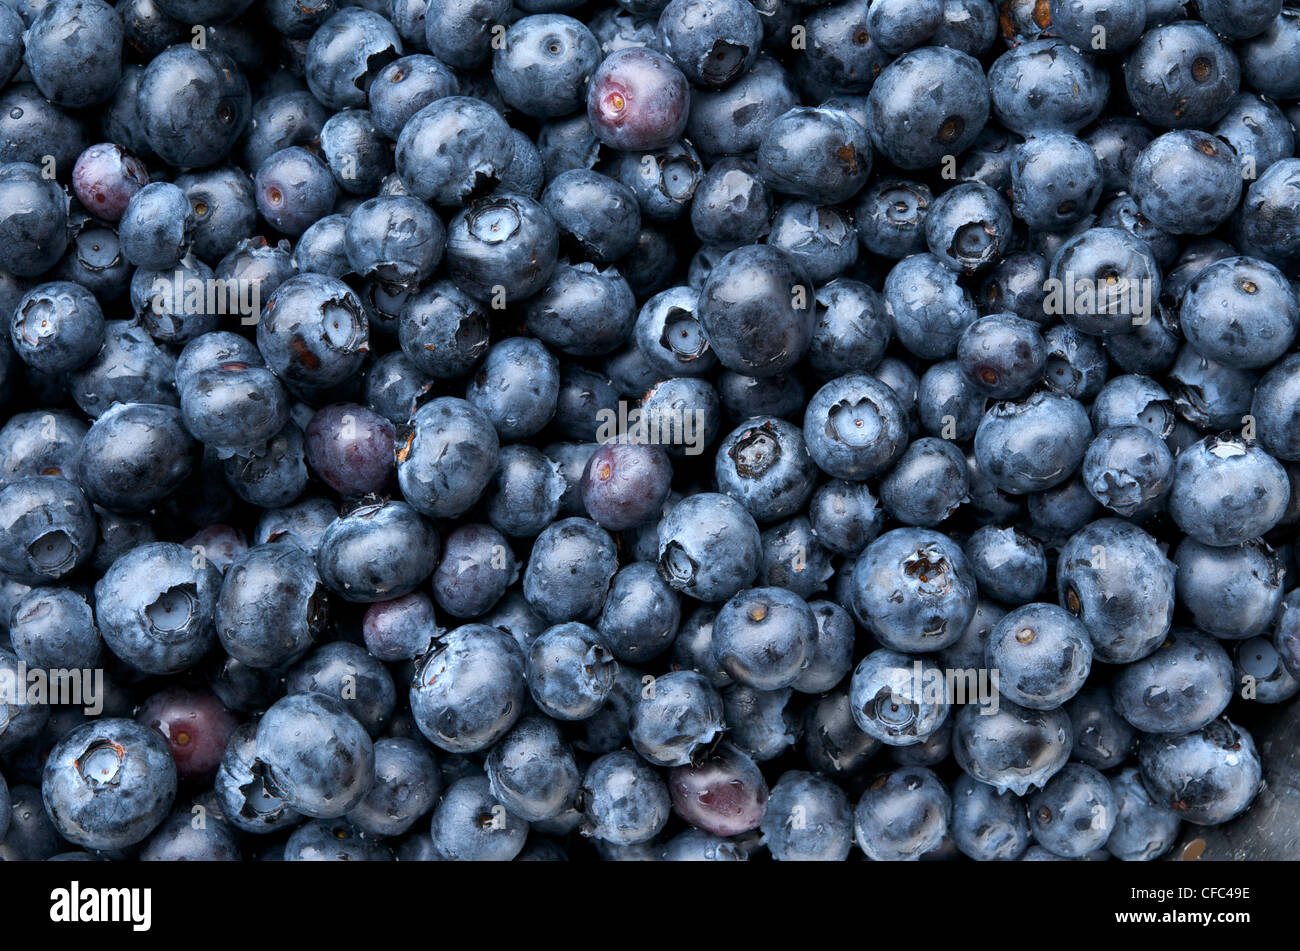 Close up of blueberries (Vaccinium corymbosum). Stock Photo